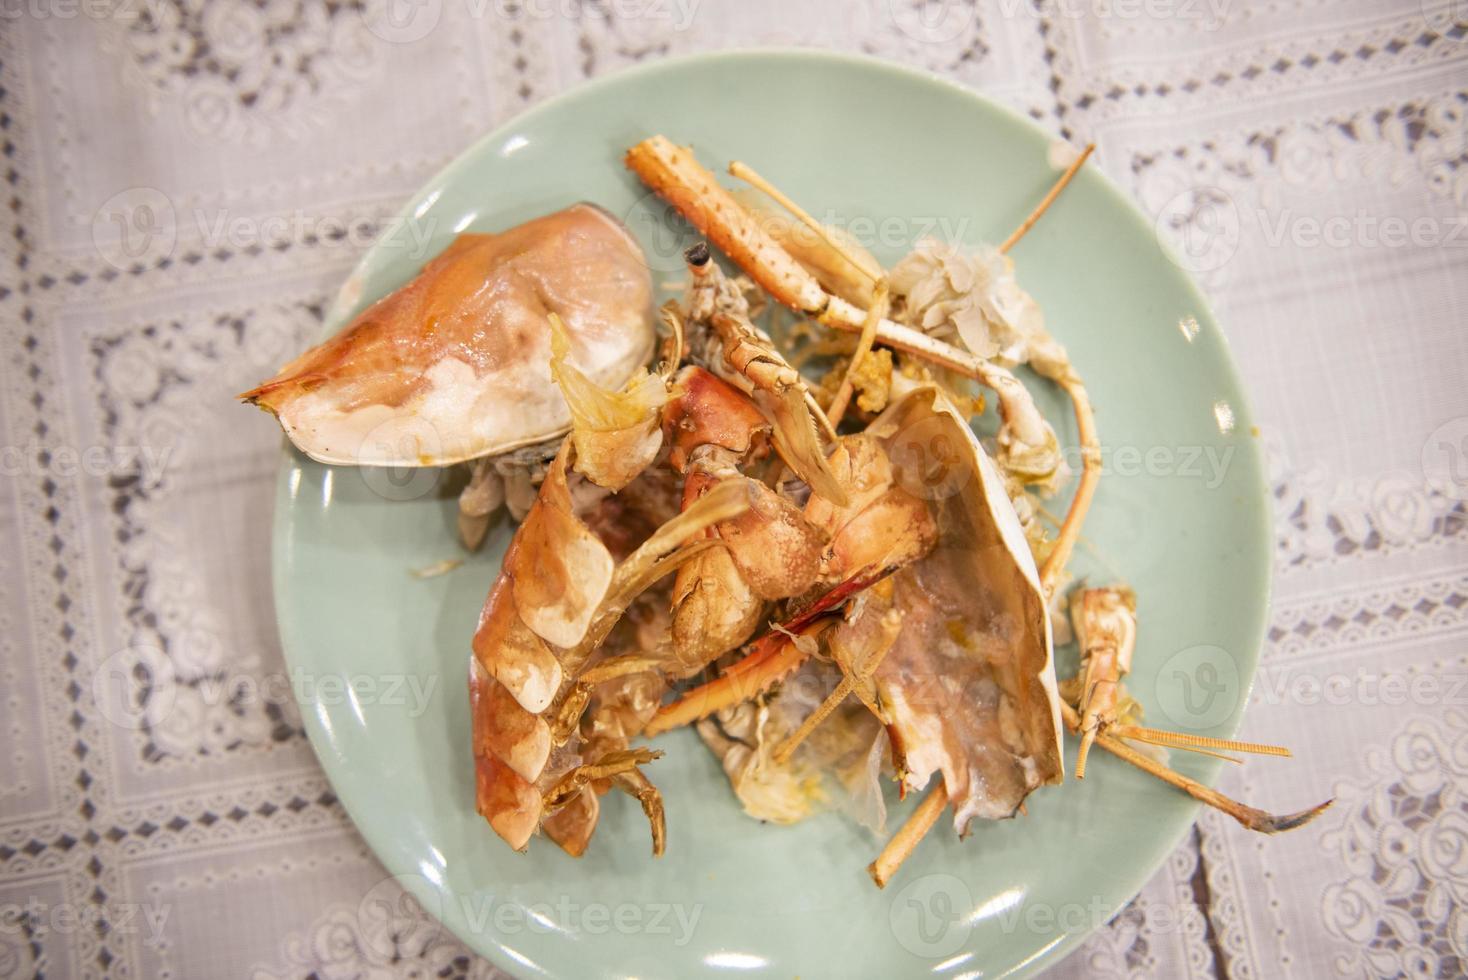 matavfall tallrik med skaldjur - tallrik efter att ha ätit skaldjur räkor, smutsiga rätter foto